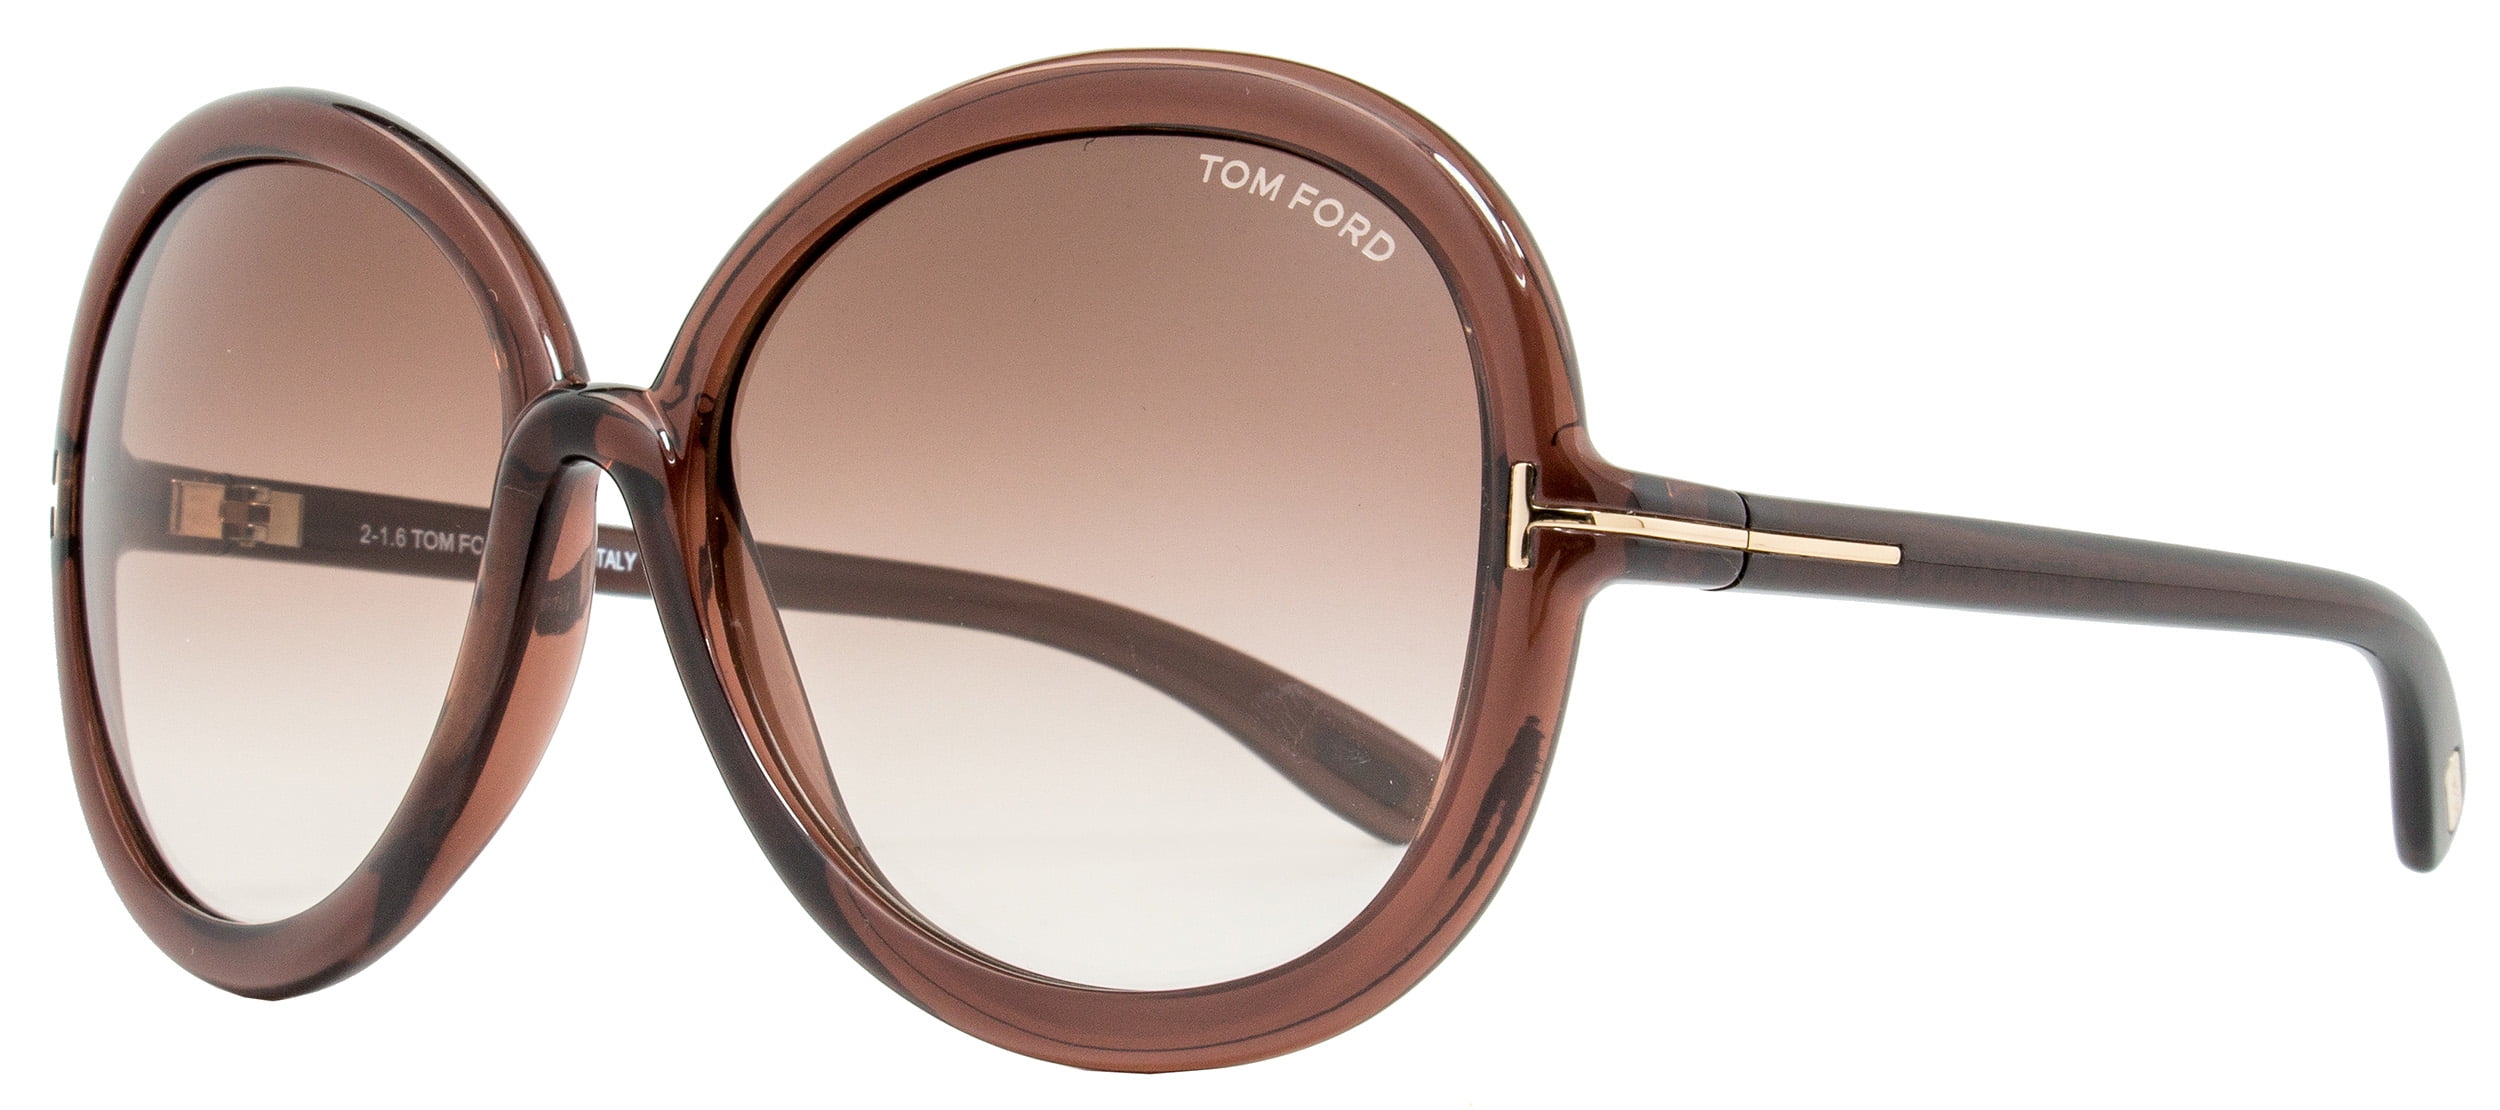 Sunglasses Tom Ford Stephanie-02 TF0570, The Tom Ford Steph…